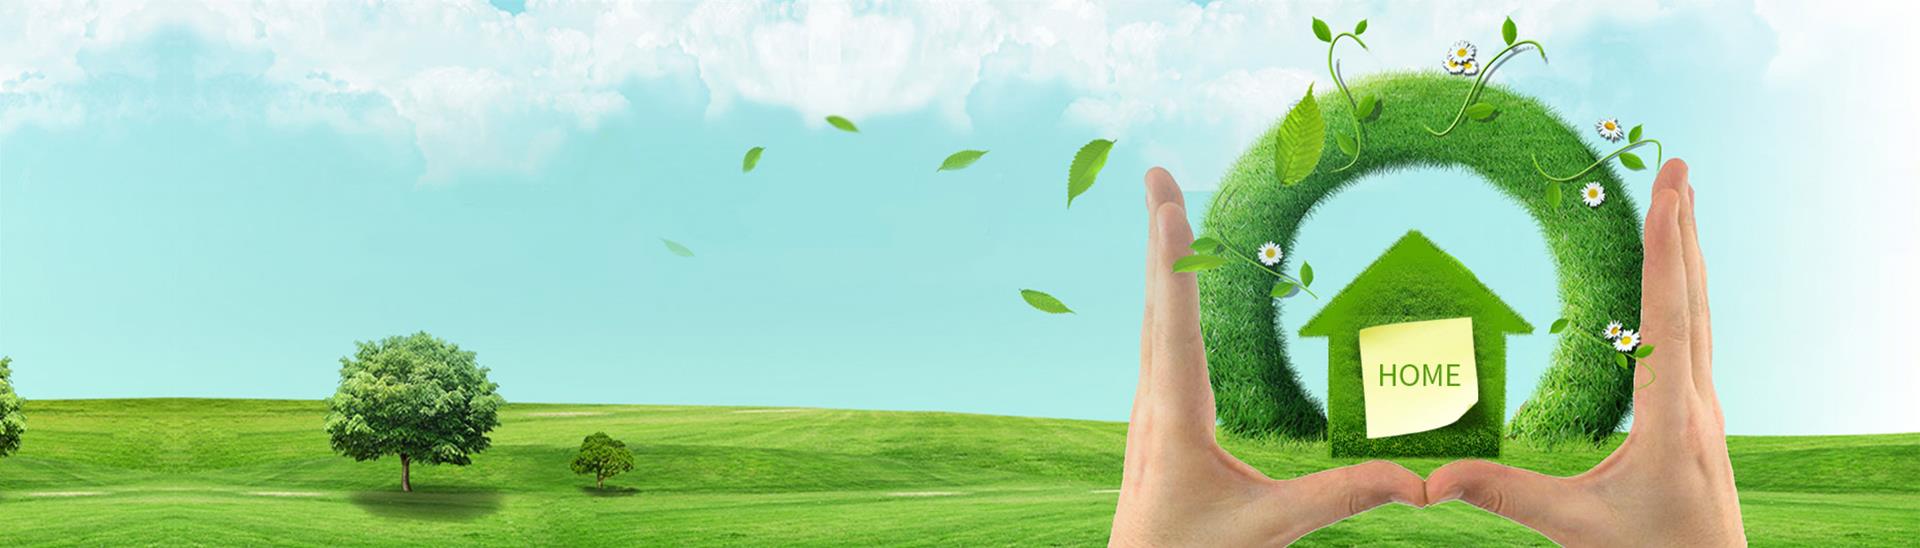 西安清源绿点清洁服务有限公司、西安保洁、保洁公司